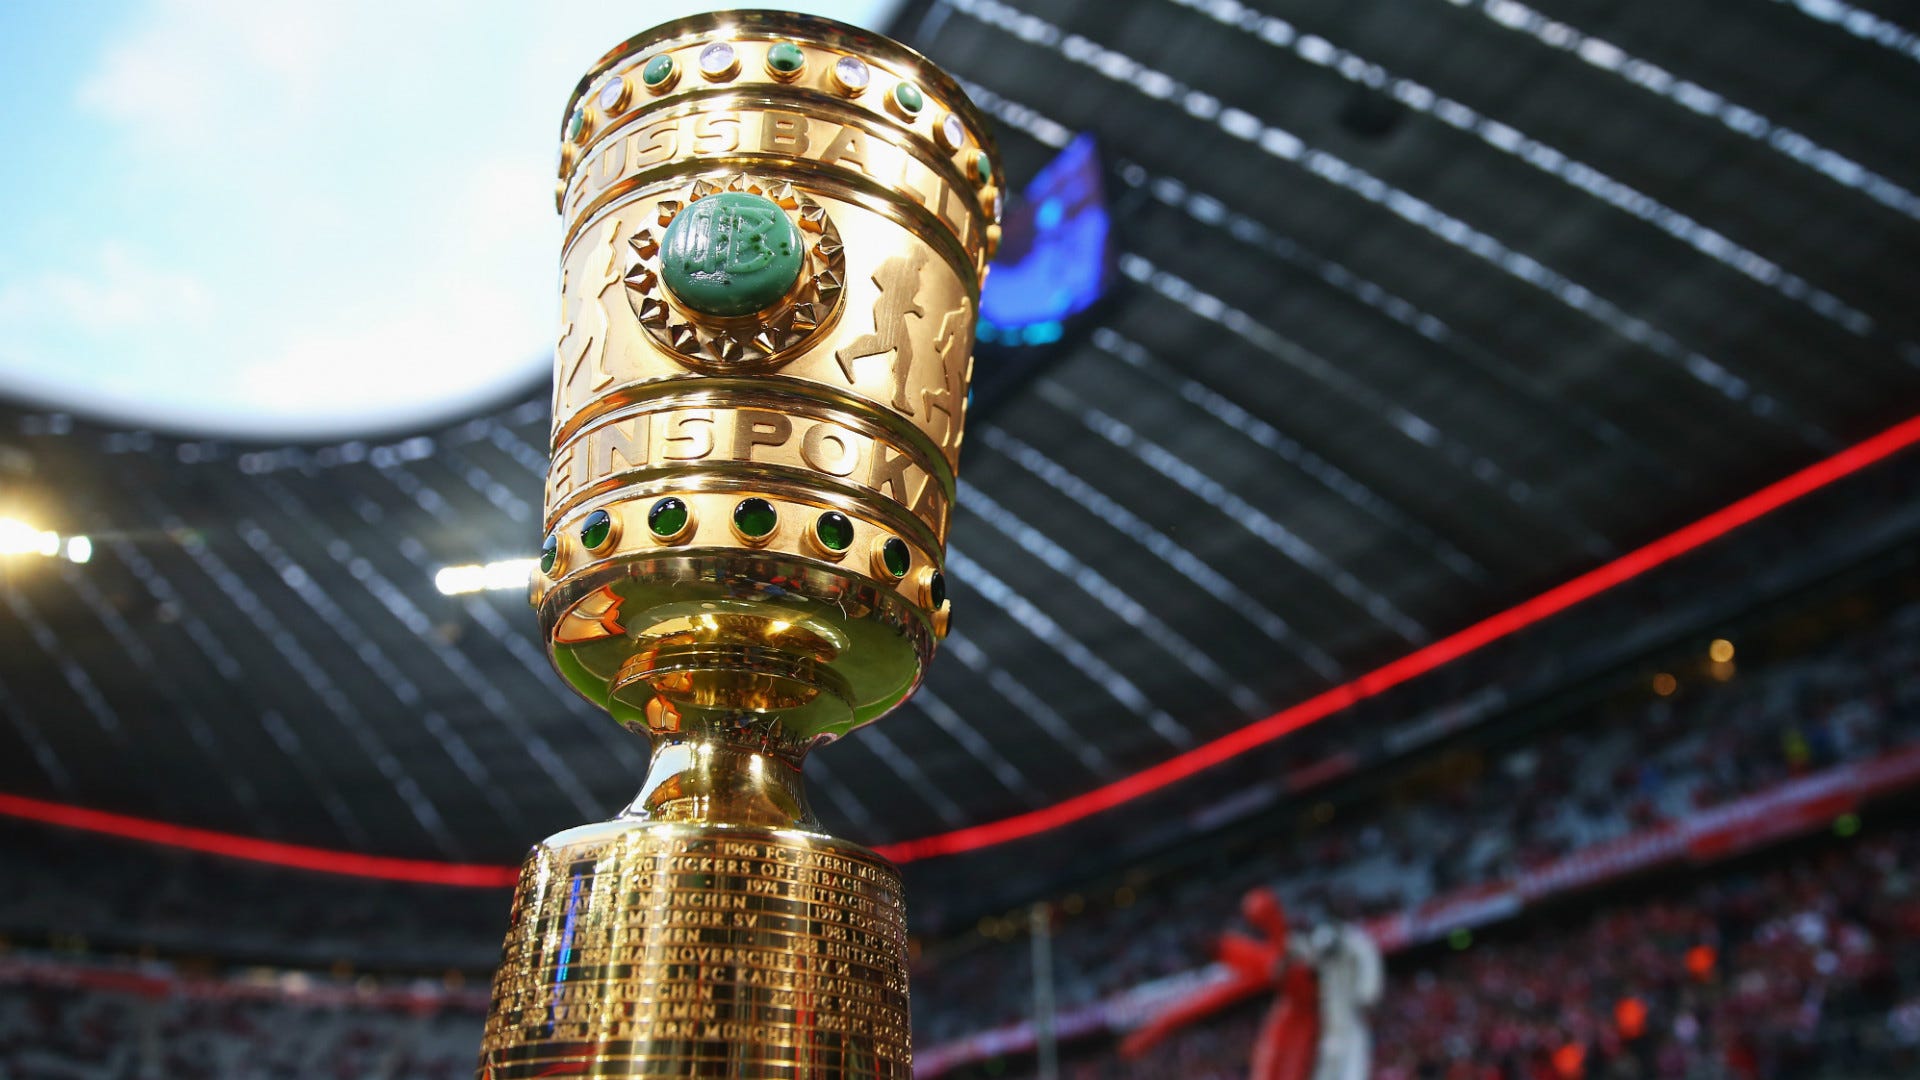 DFB-Pokal Die Auslosung zum Halbfinale heute live im TV und LIVE-STREAM sehen Goal Deutschland